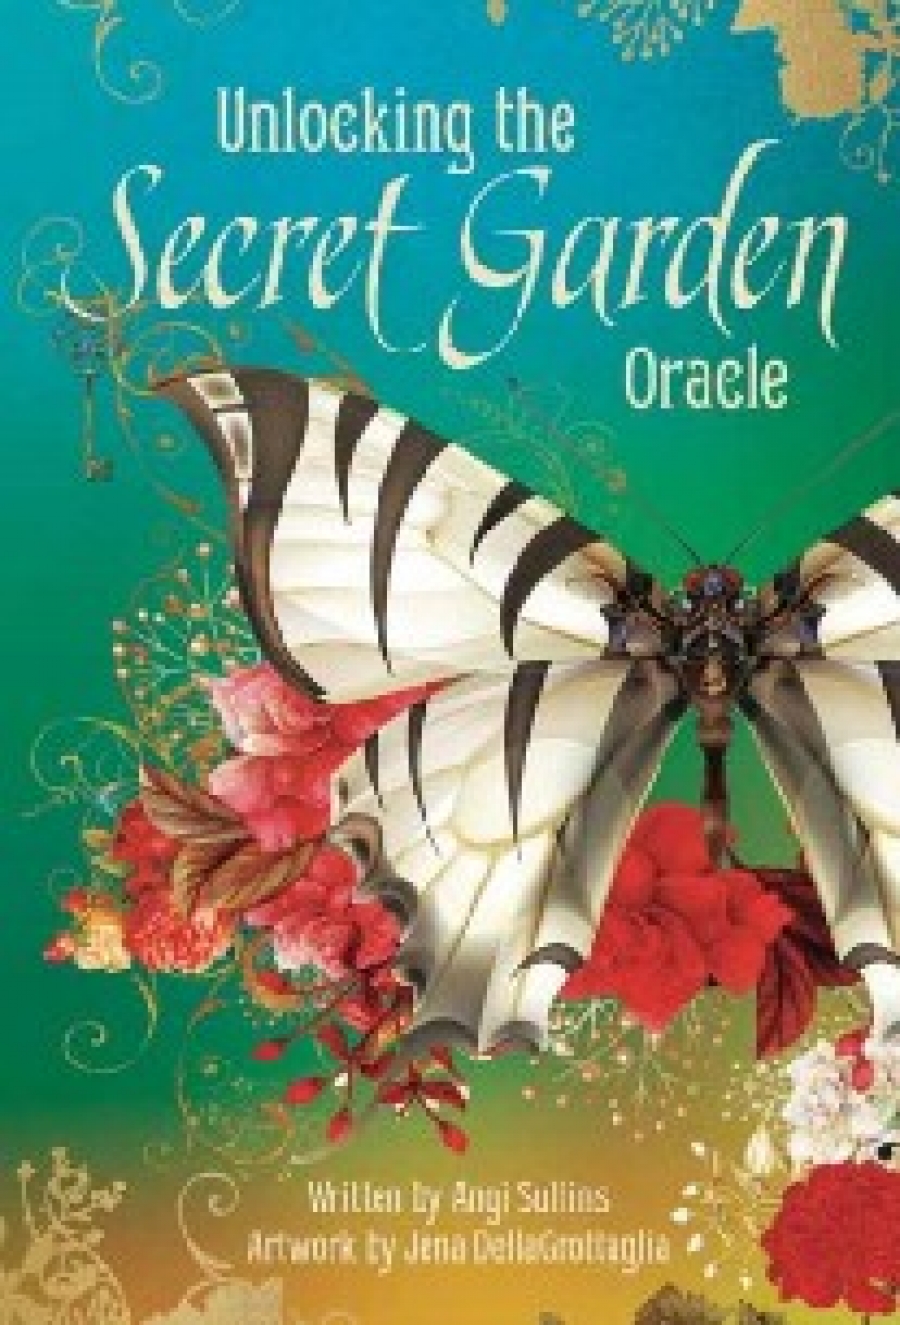 JENA, Sullins, Angi ; DellaGrottaglia Unlocking the Secret Garden Oracle 